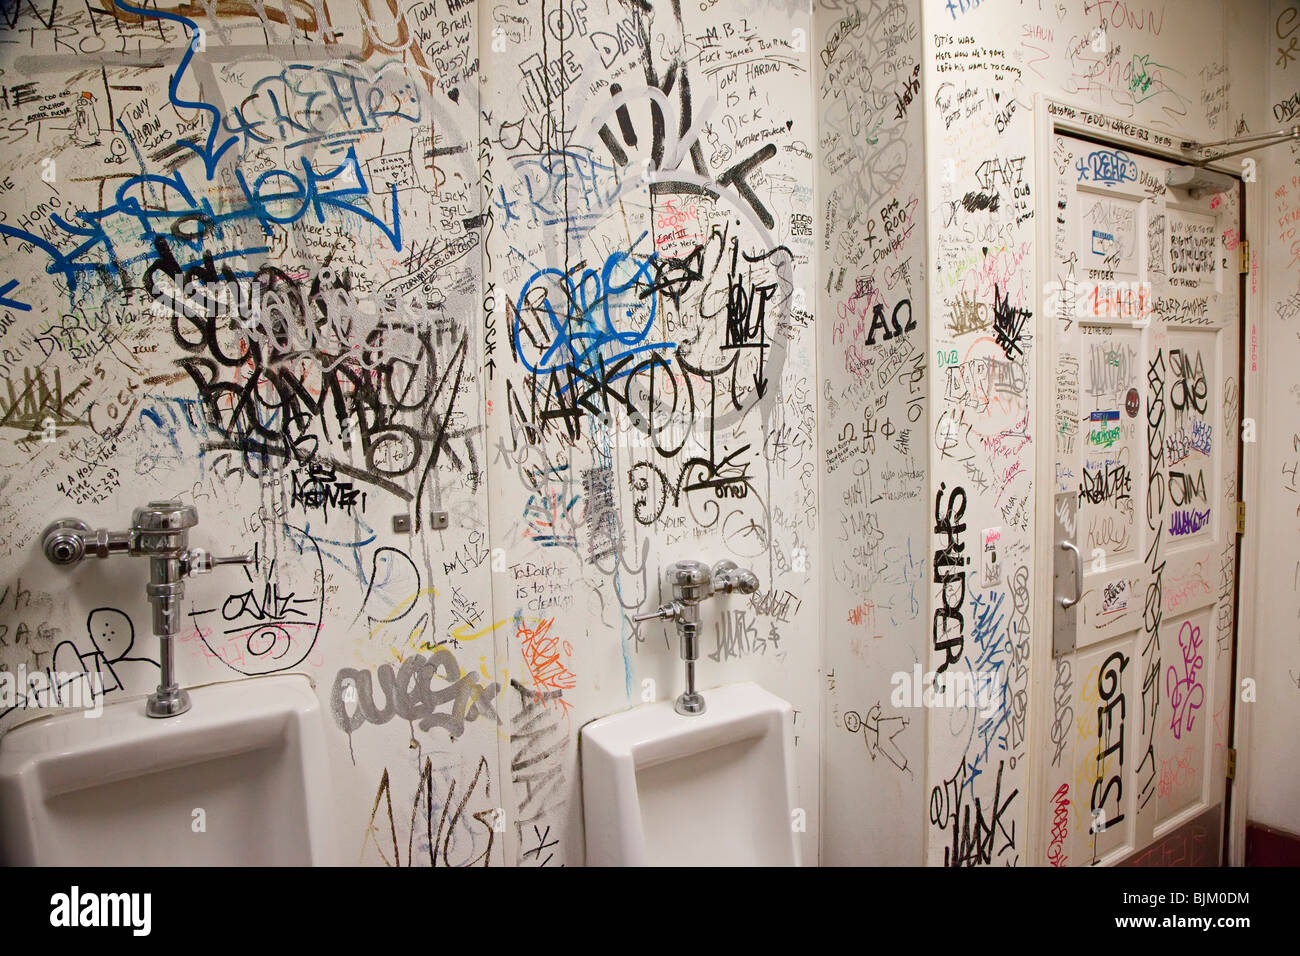 Detroit, Michigan - Graffiti couvre les murs d'une salle de repos à l'honnête ? John's Bar et pas de grill. Banque D'Images